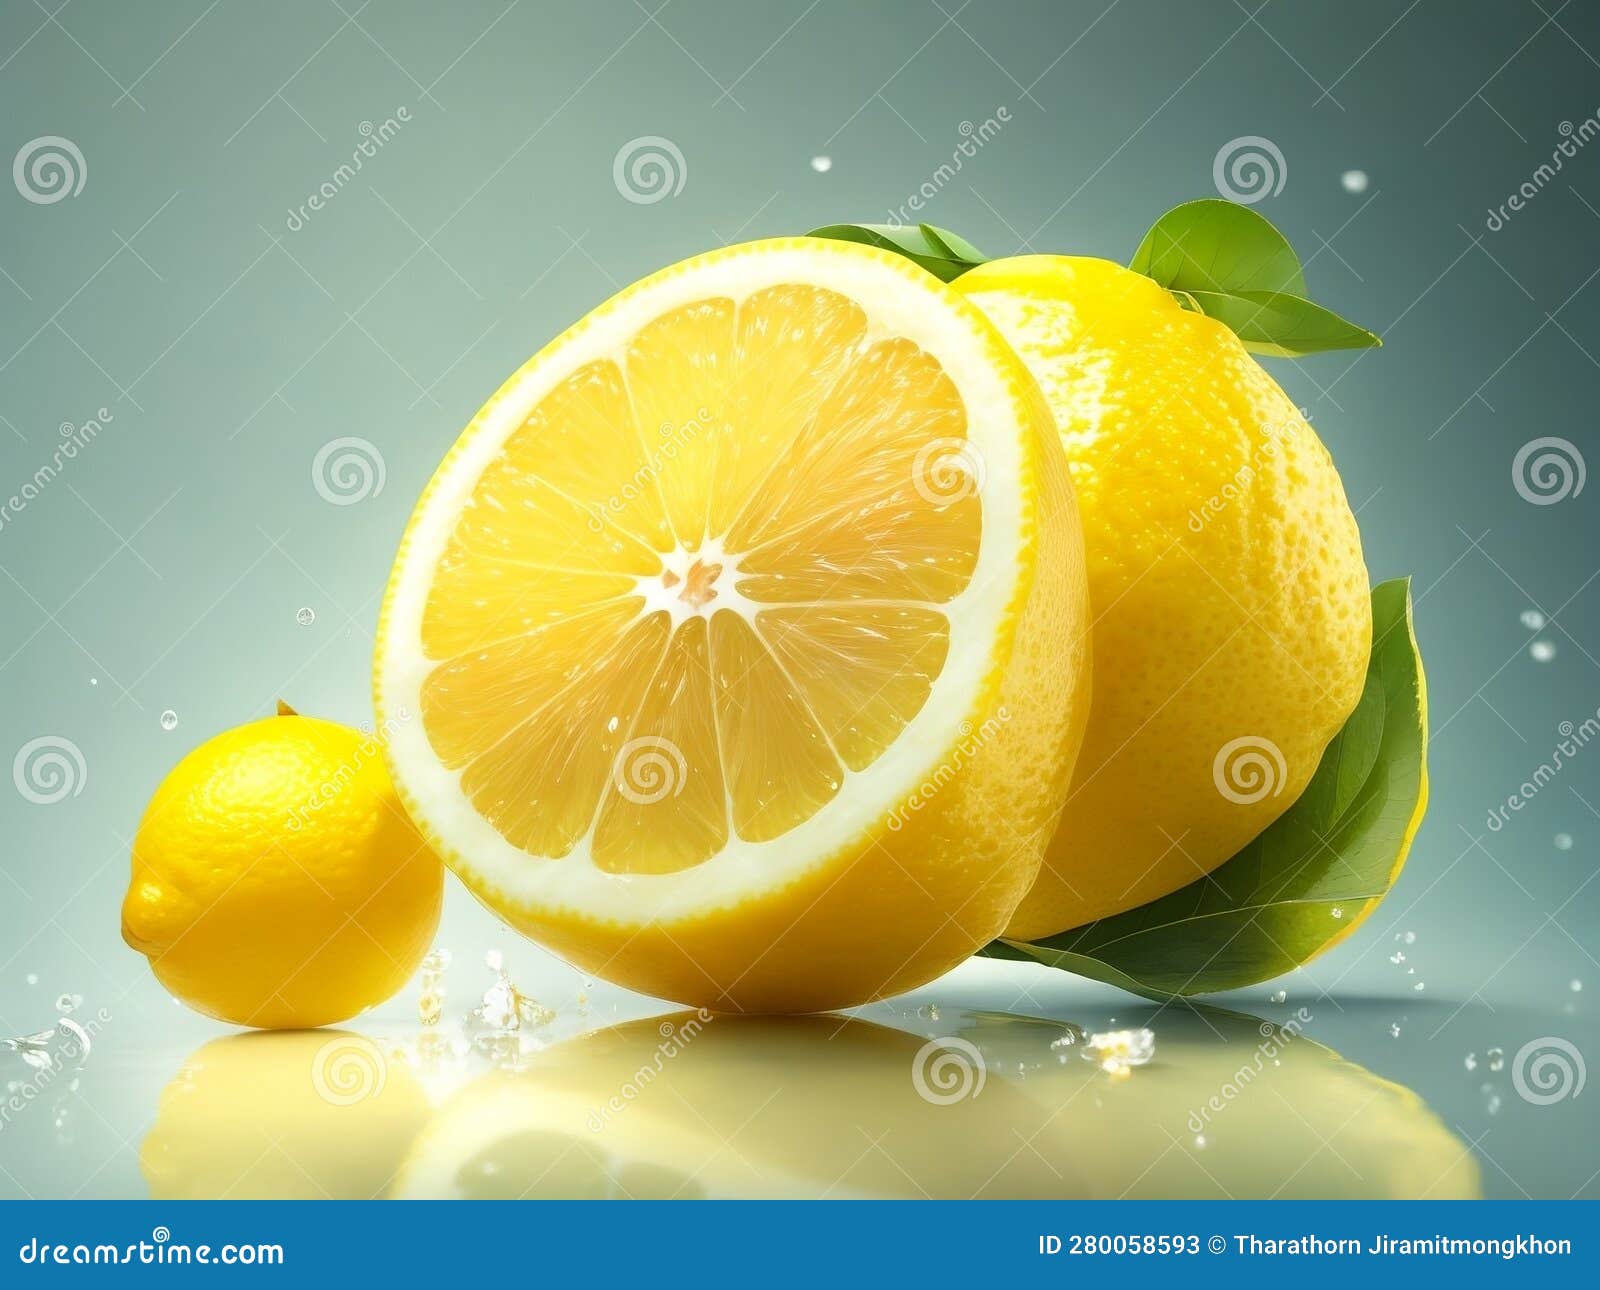 Essences d'agrumes - Citron jaune